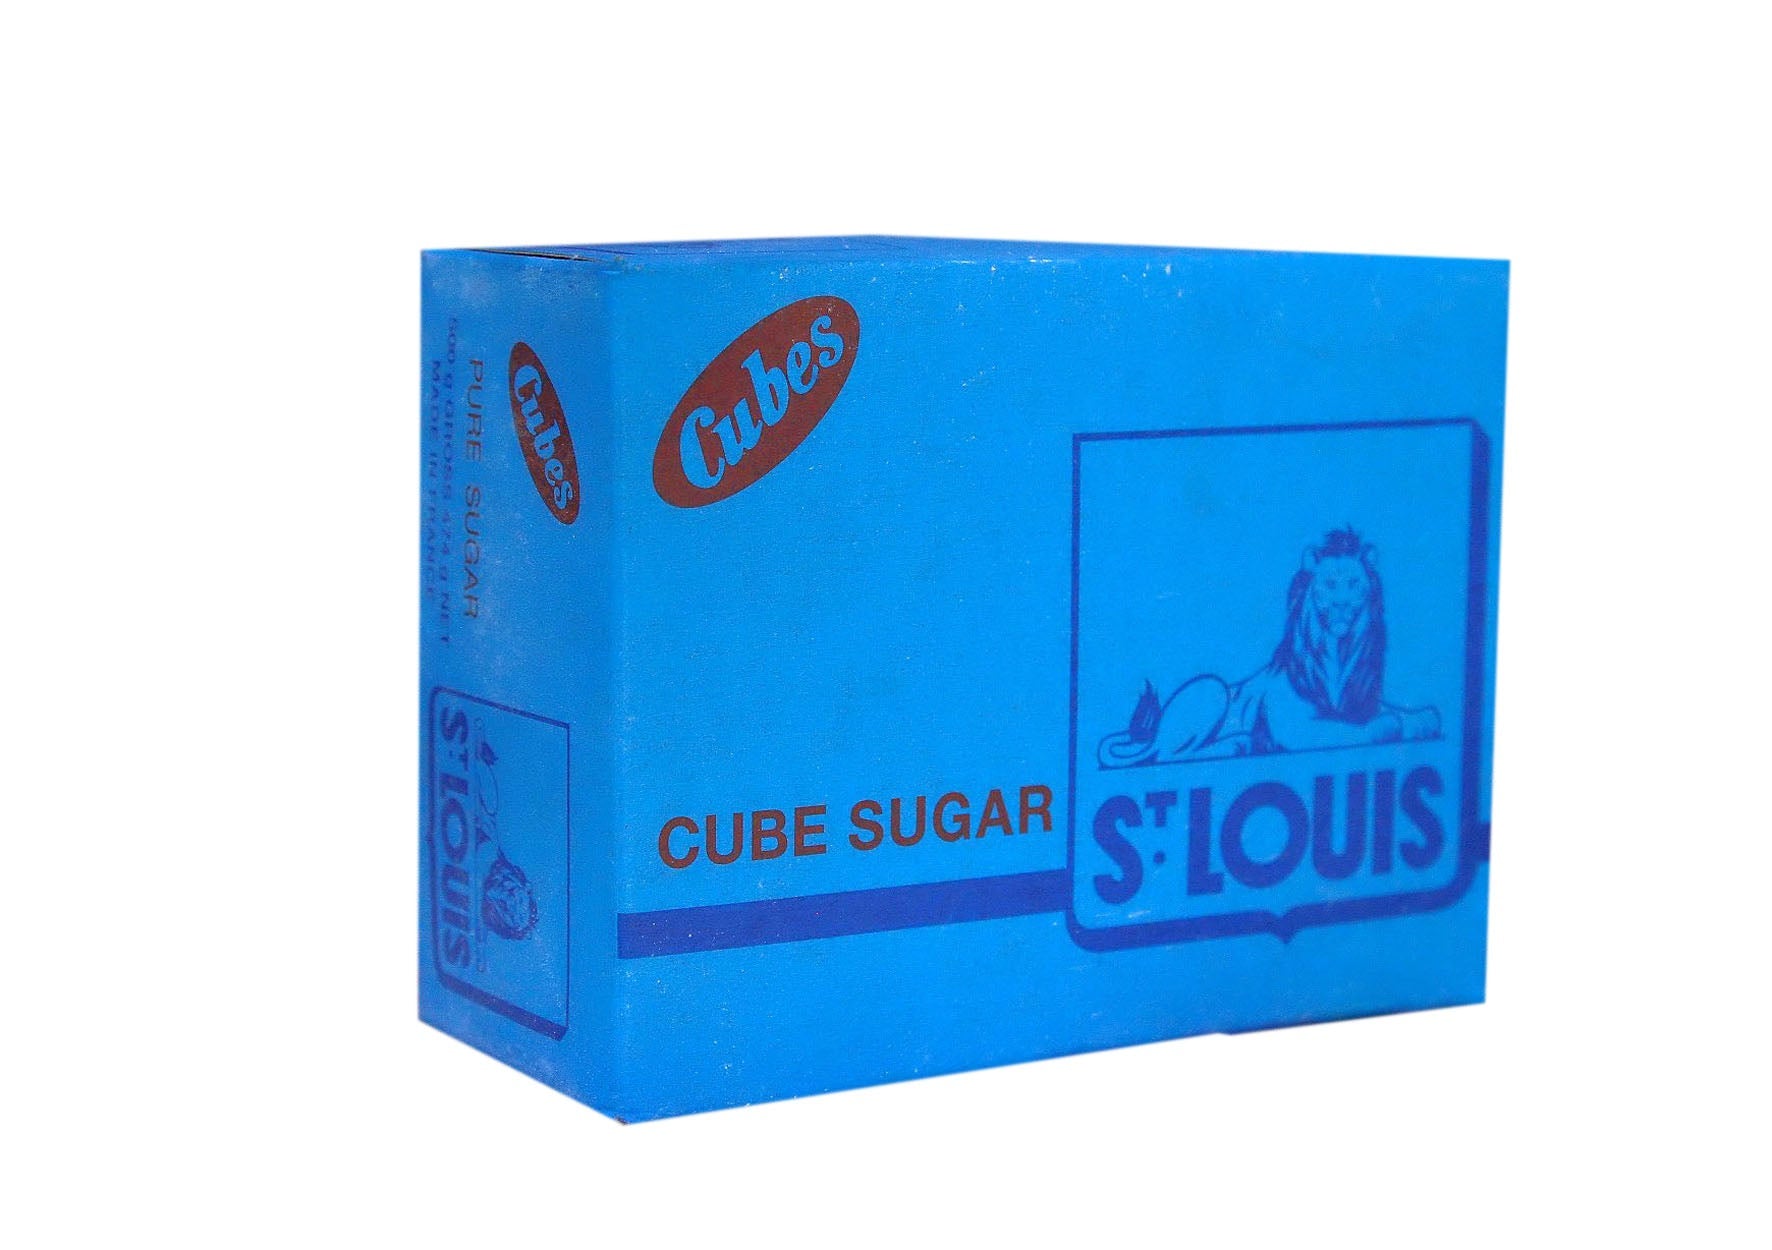 1 kilogram box of st louis cube sugar